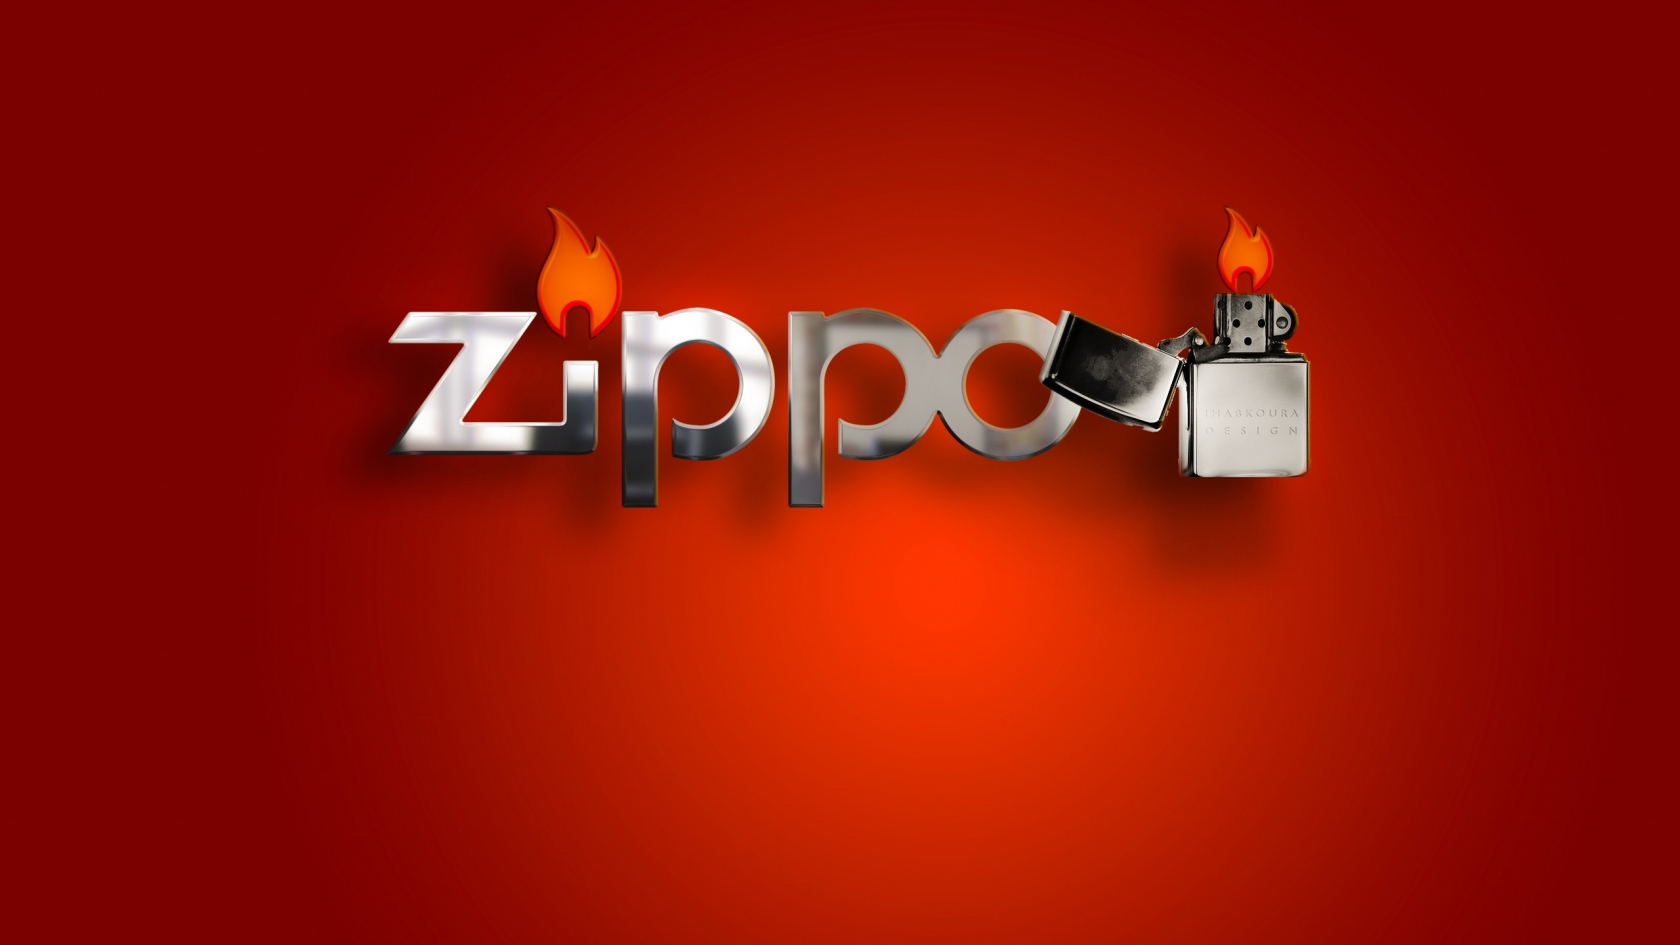 Zippo Lighter for 1680 x 945 HDTV resolution